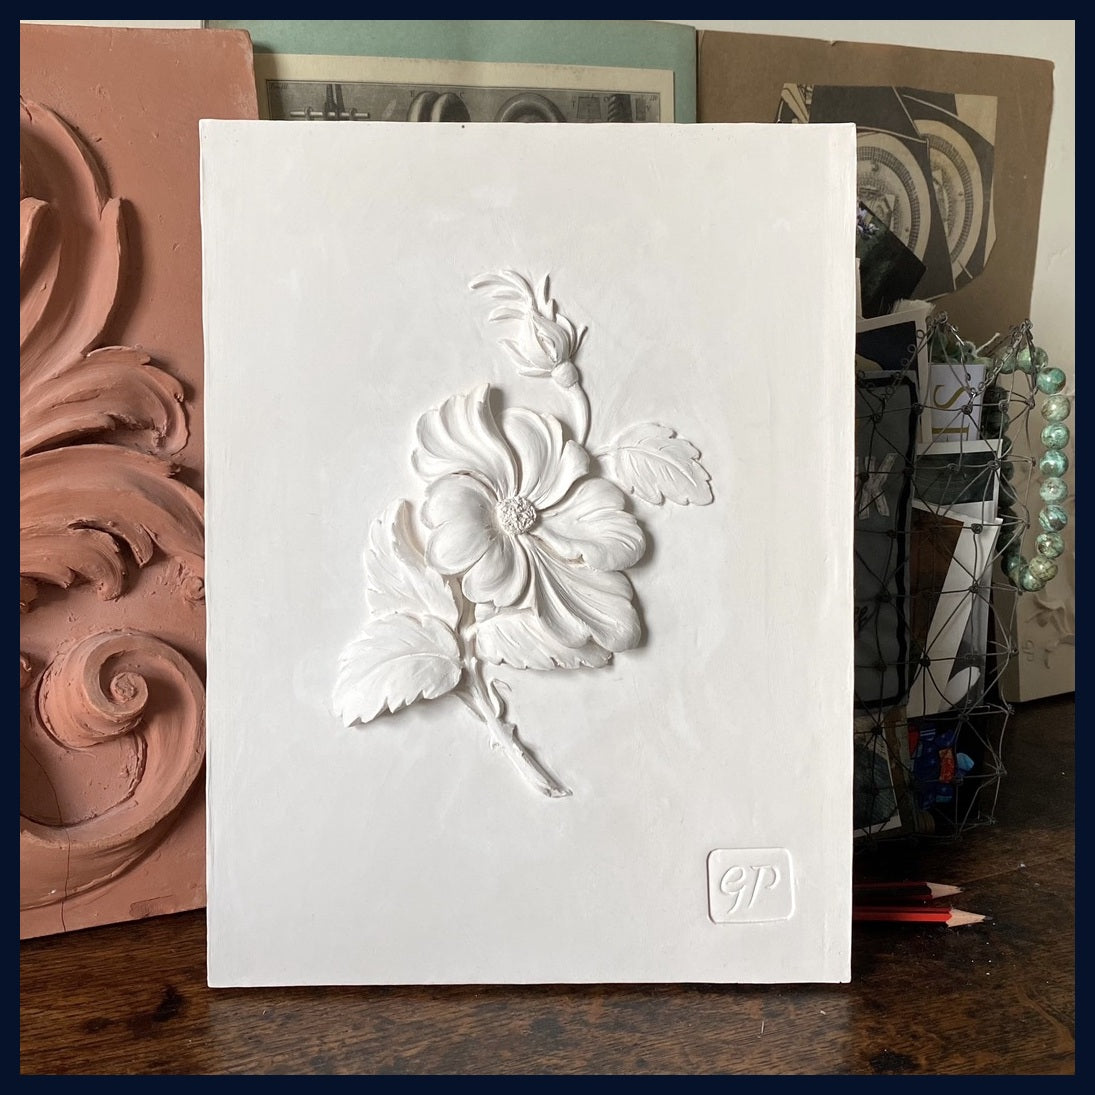 Wild Rose: Plaster Panel Art by Geoffrey Preston